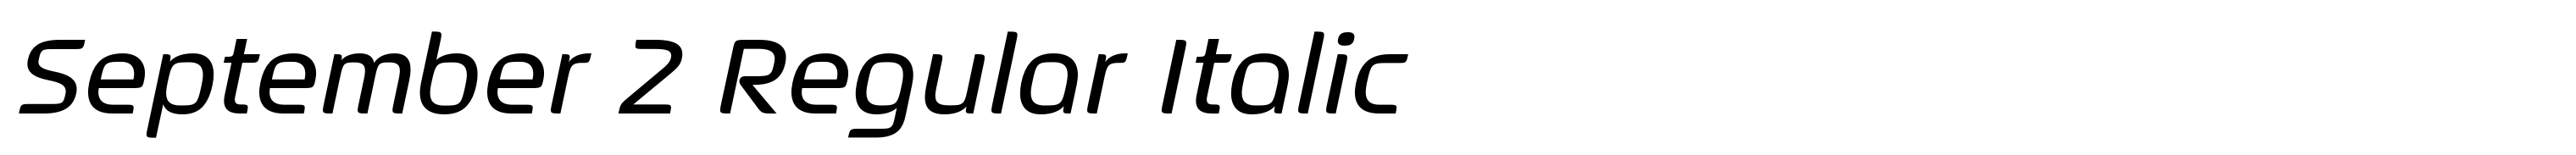 September 2 Regular Italic